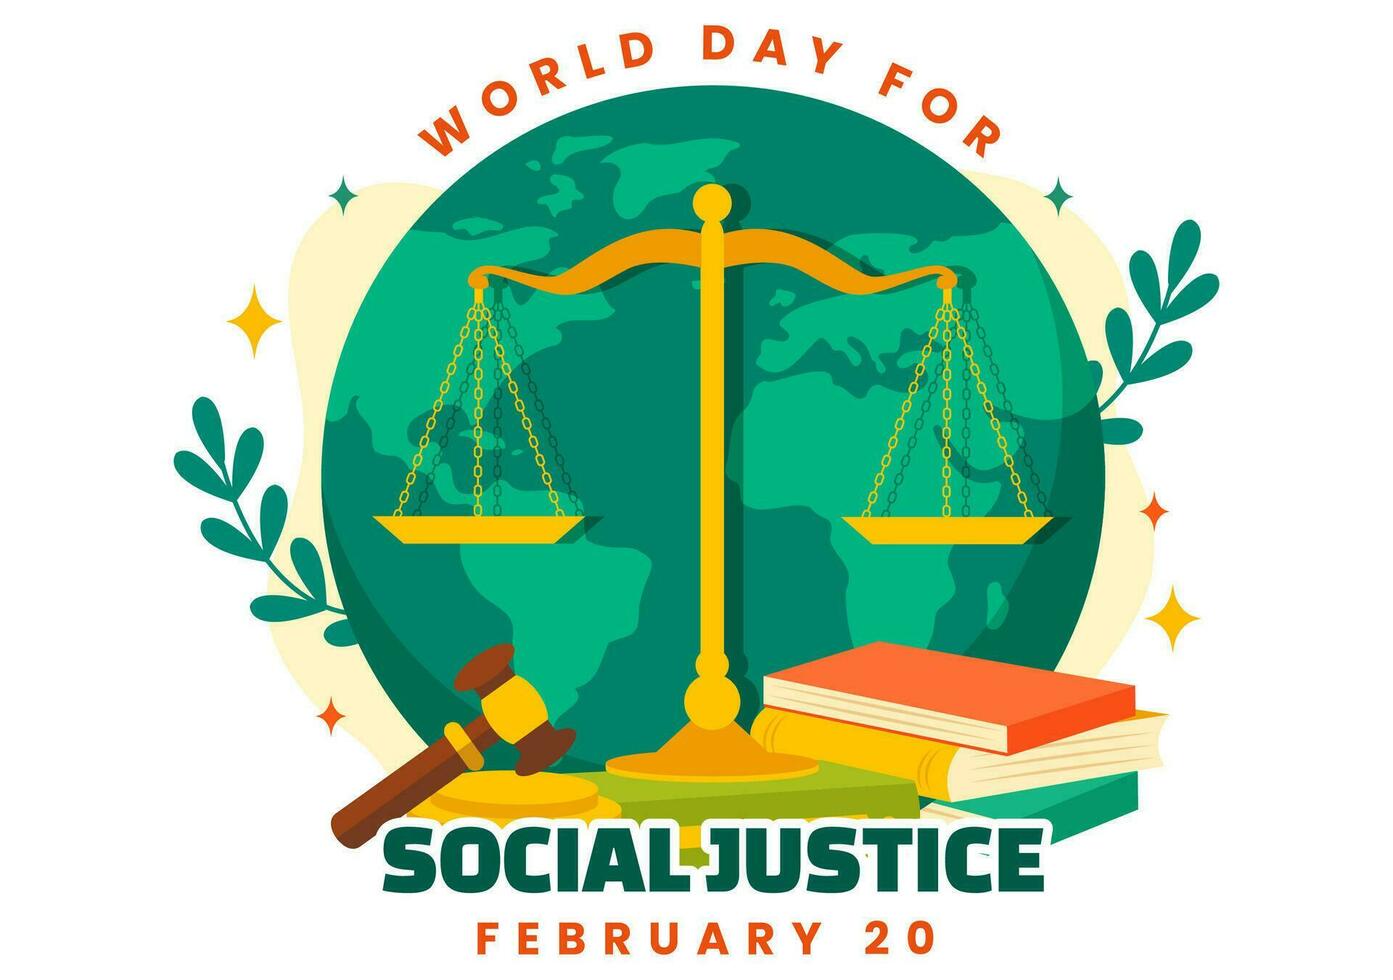 Welt Tag von Sozial Gerechtigkeit Vektor Illustration auf Februar 20 mit Waage oder Hammer zum ein gerade Beziehung und Ungerechtigkeit Schutz im Hintergrund